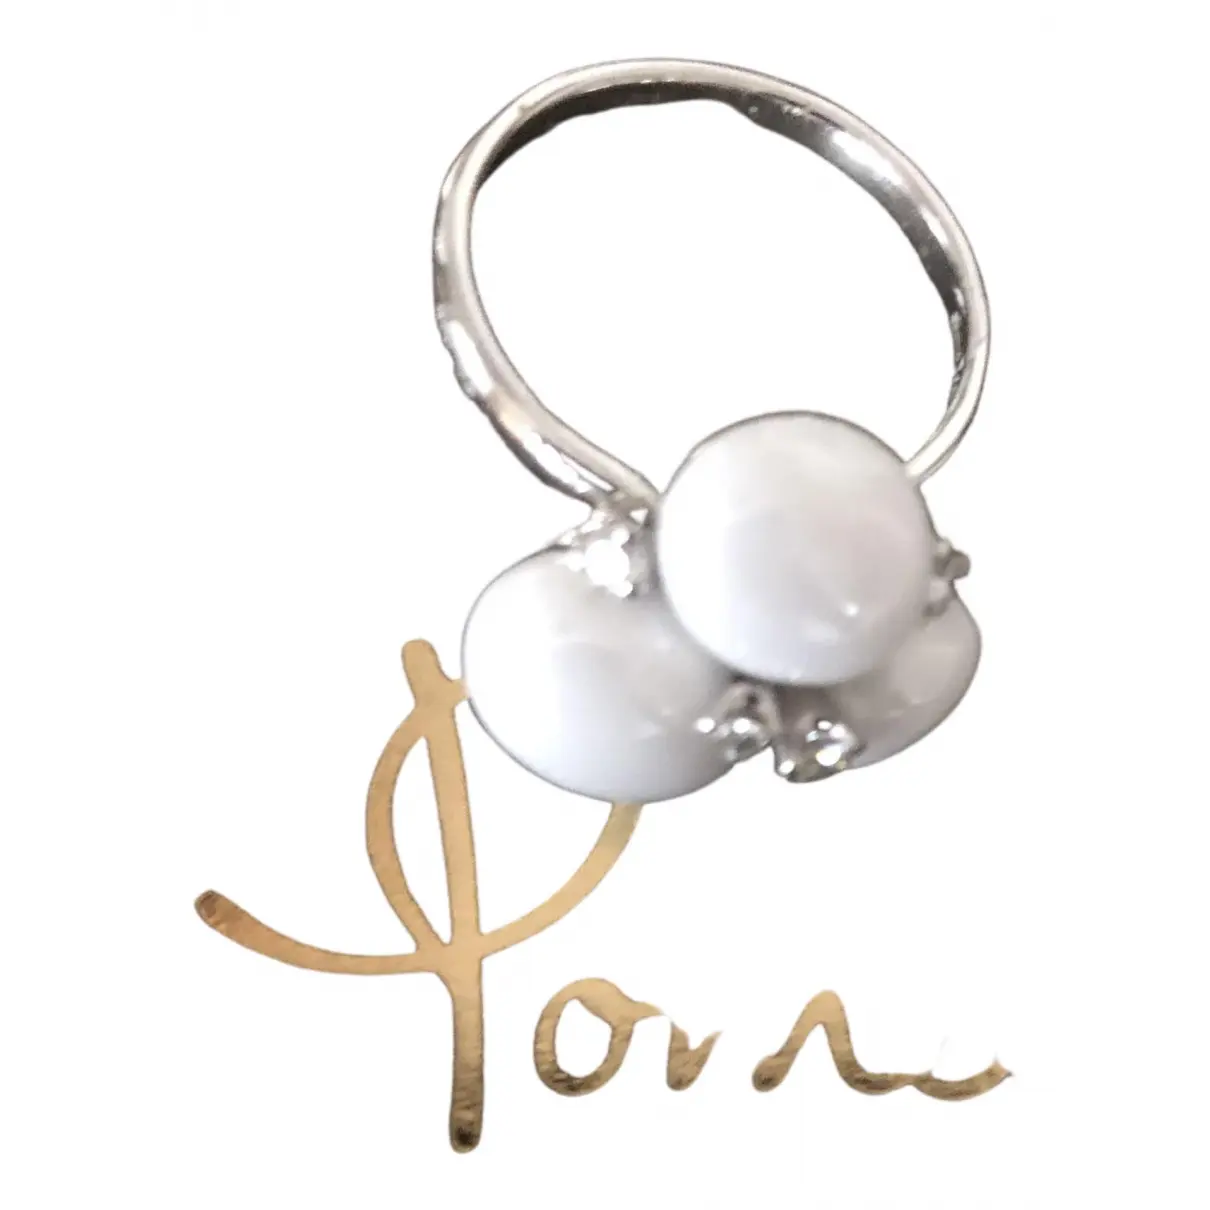 Buy Pomellato White gold ring online